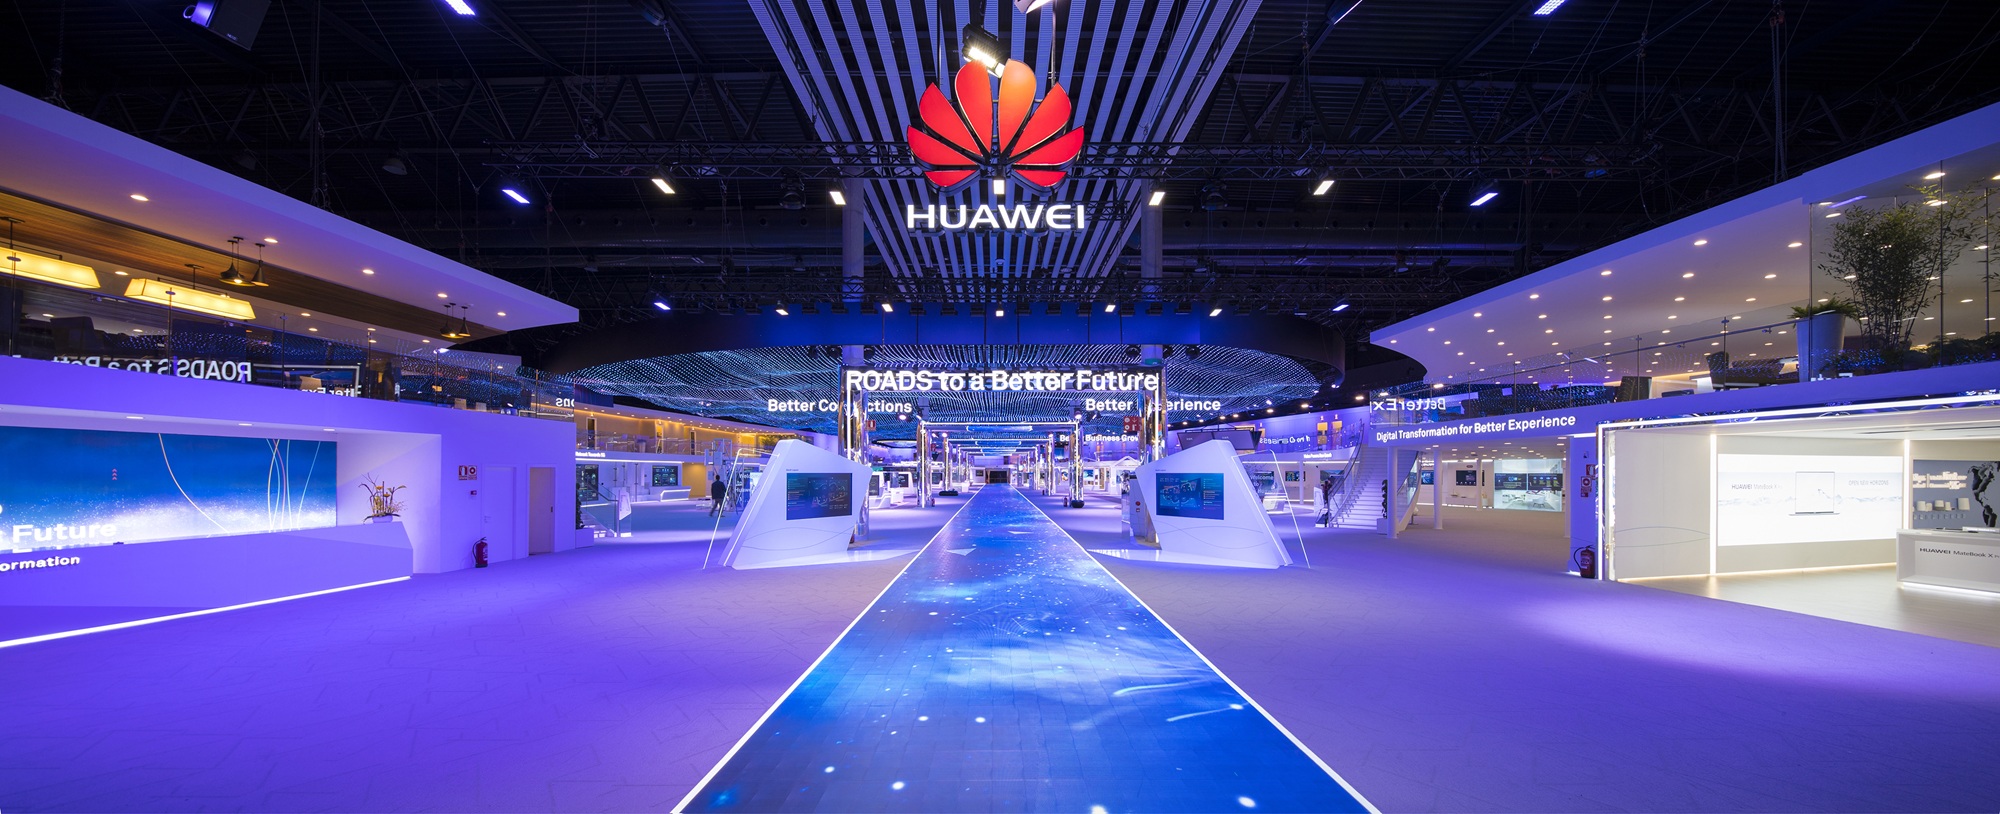 Huawei odpiera zarzuty dotyczące współpracy z chińskim rządem